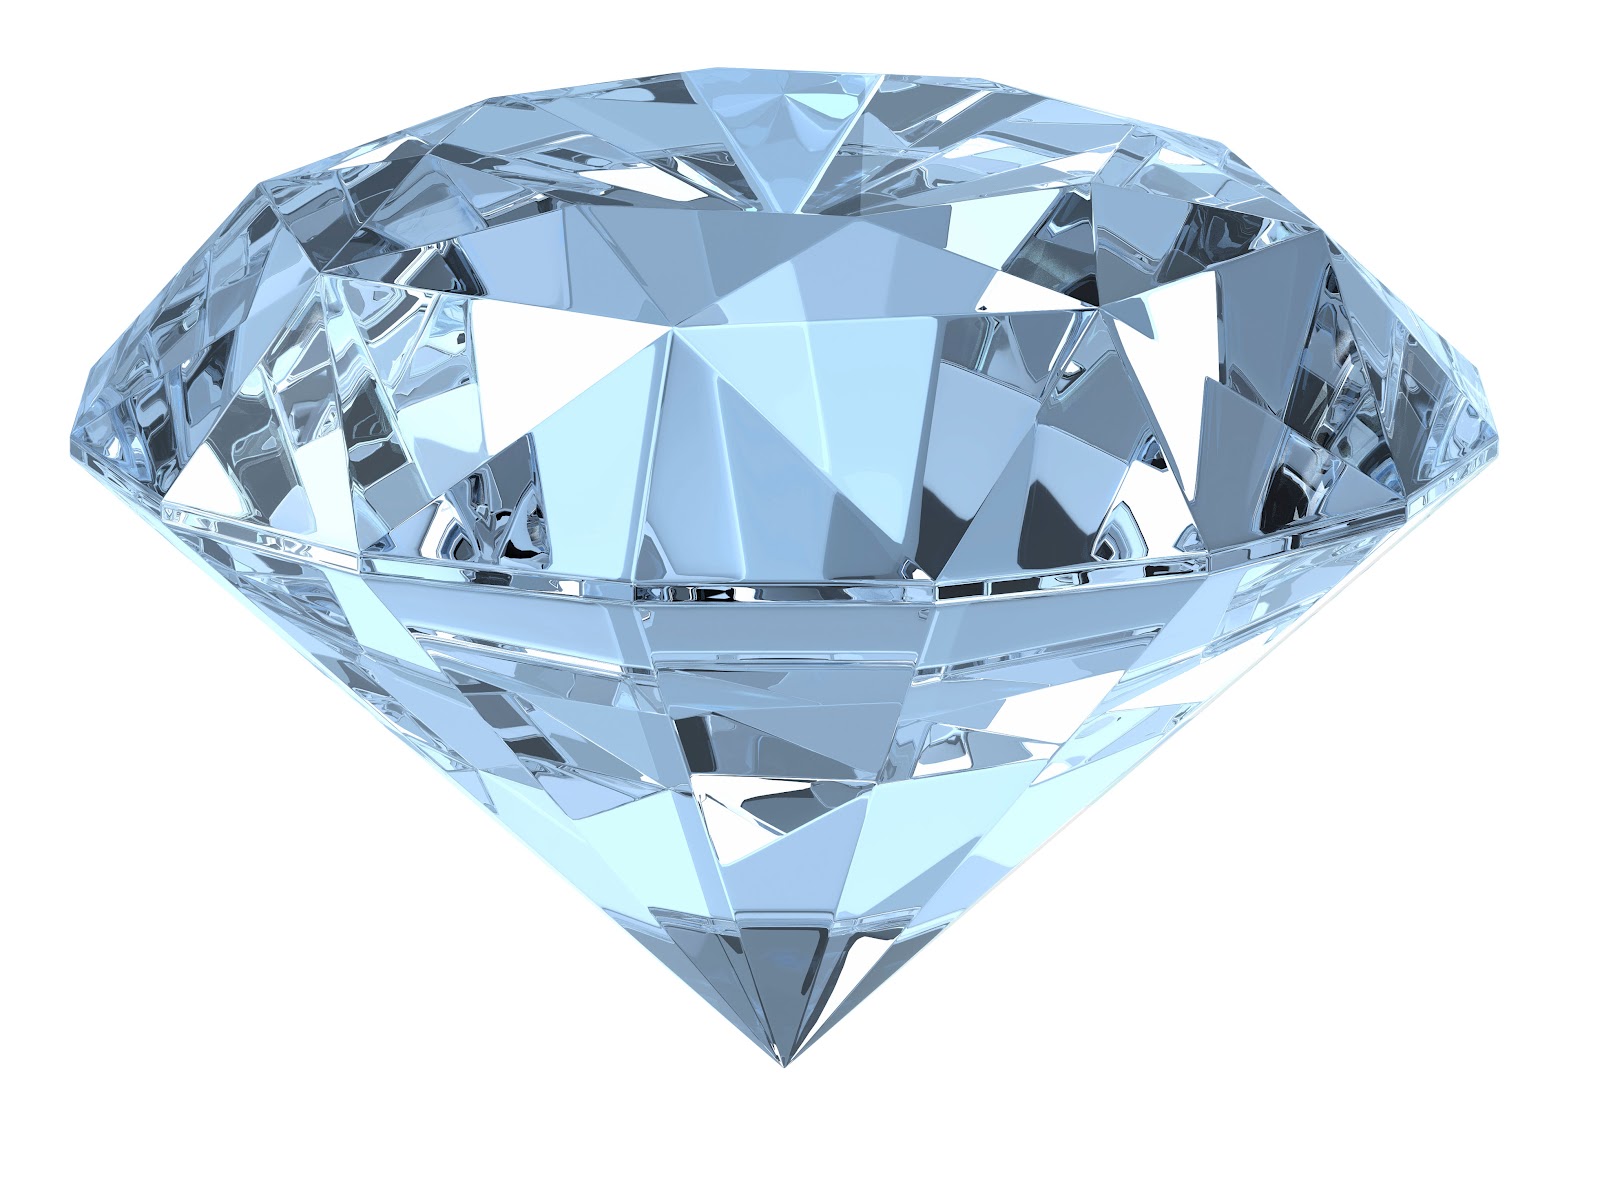 DNPM deve conceder certificação a diamantes adquiridos em leilão judicial